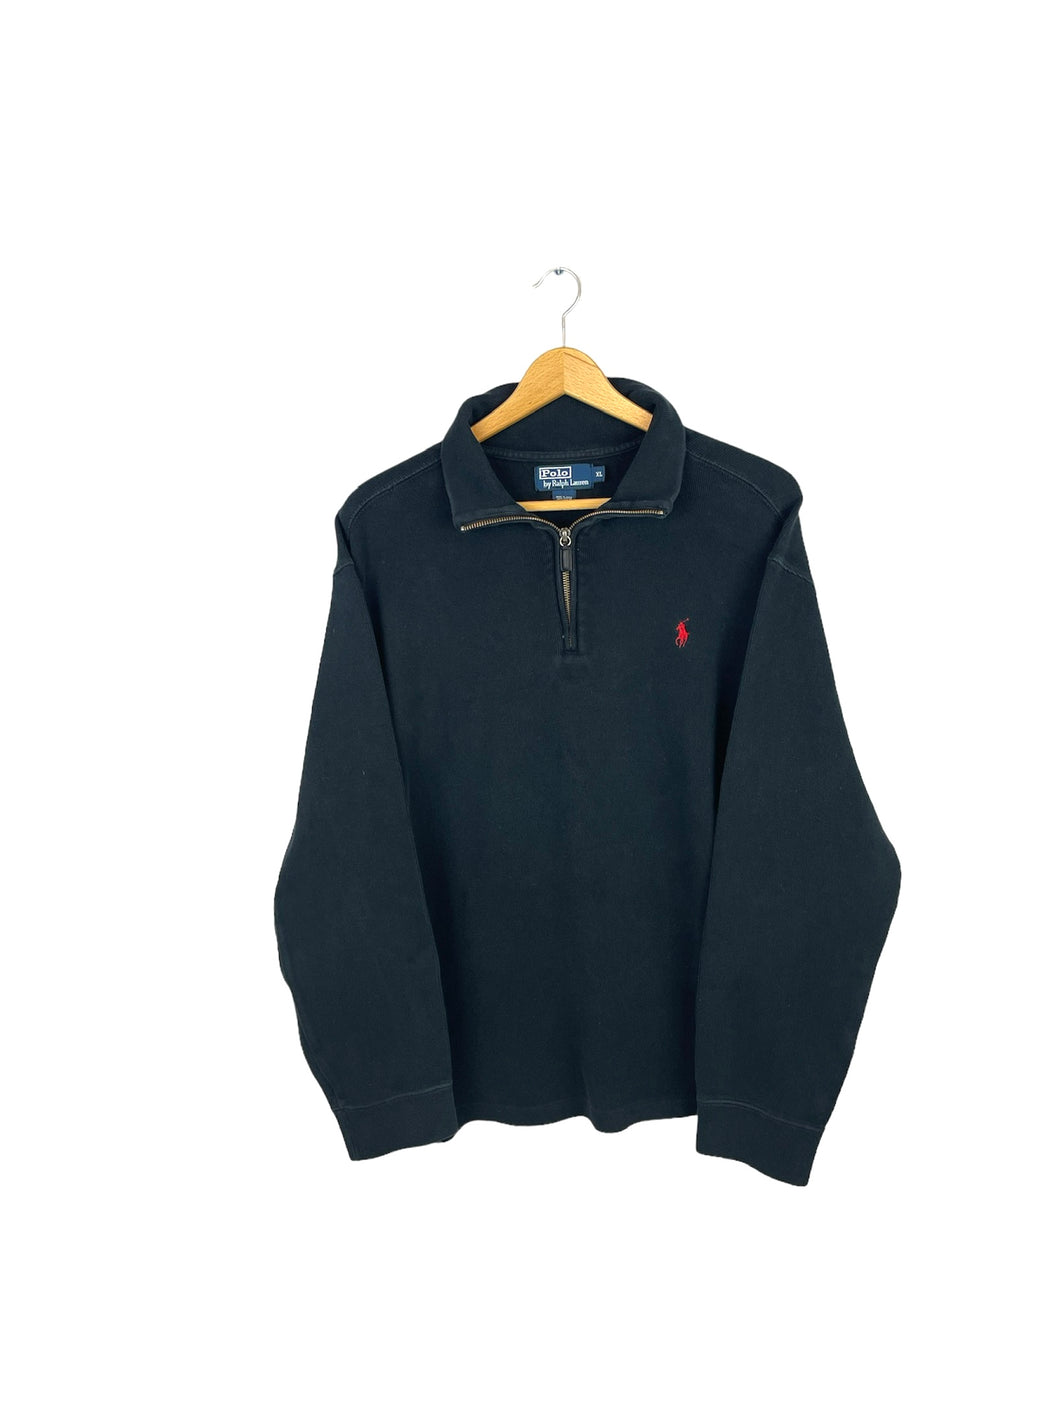 Ralph Lauren 1/4 Zip Sweatshirt - XLarge